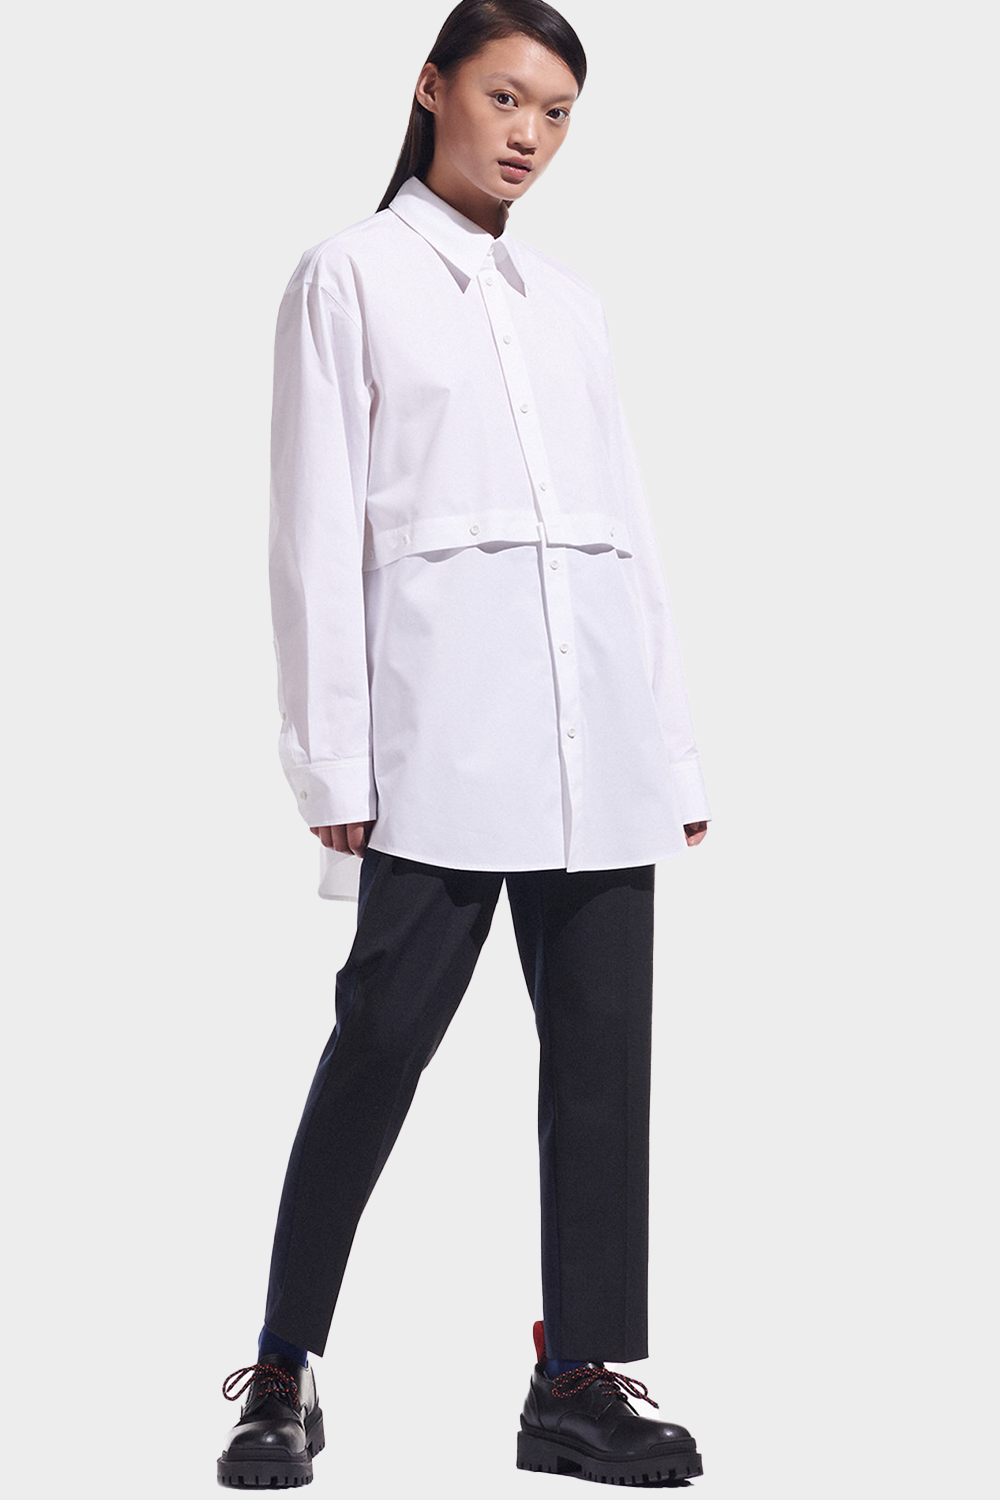 חולצה מכופתרת לנשים בצבע לבן KARL LAGERFELD Vendome online | ונדום .